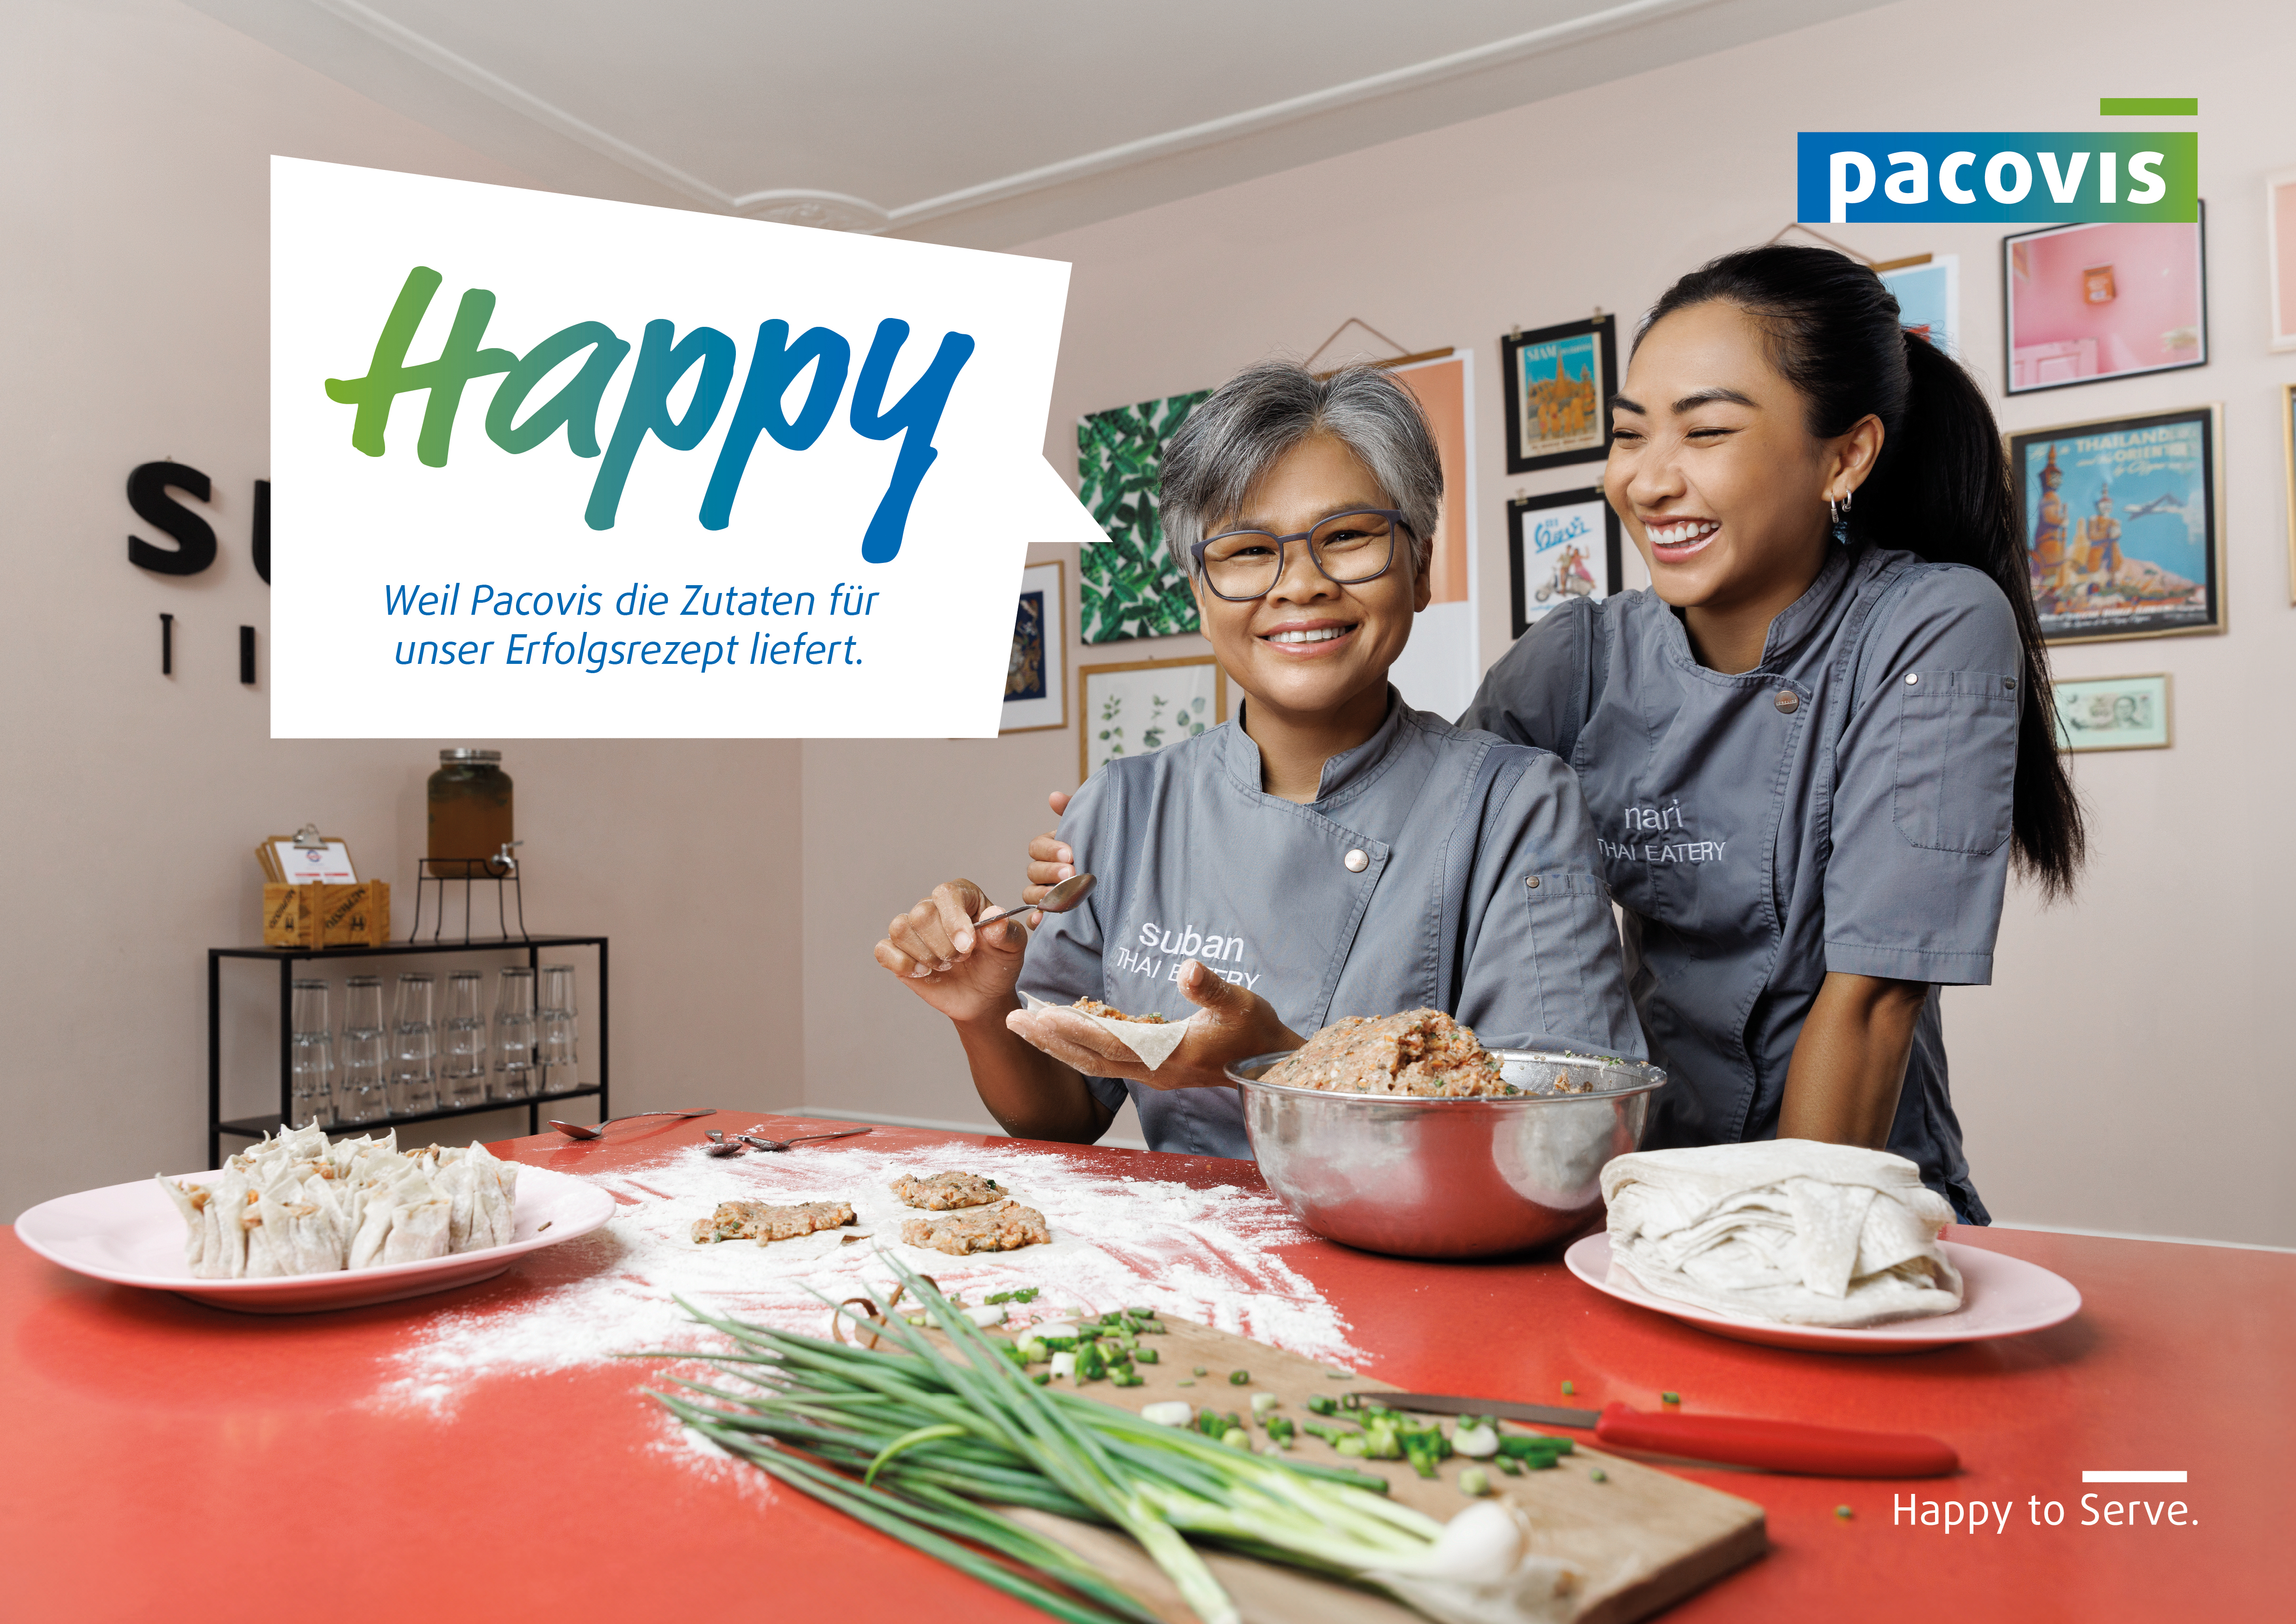 Bild aus der Pacovis-Imagekampagne mit glücklichen Restaurantbesitzerinnen und Text "Happy, weil Pacovis die Zutaten für unser Erfolgsrezept liefert."